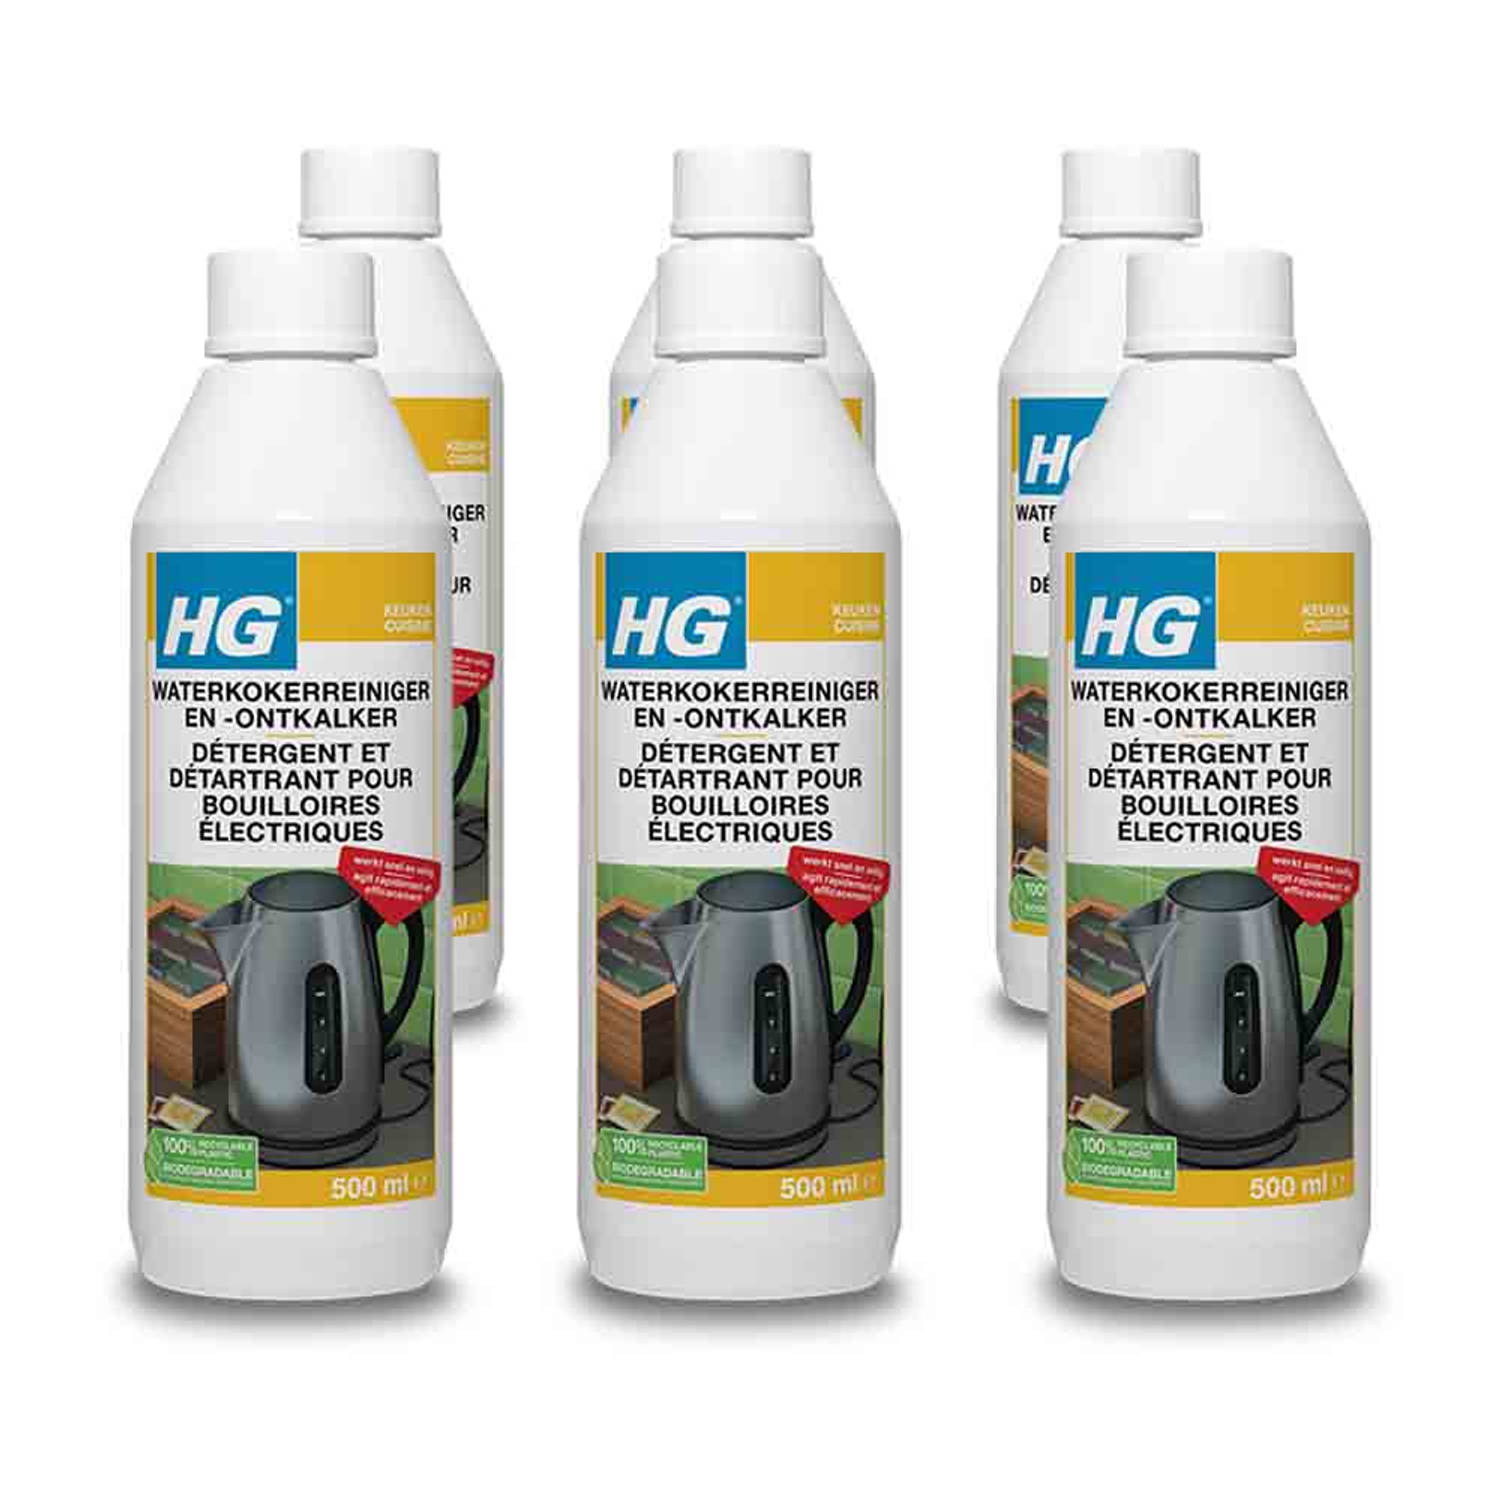 HG reiniger & ontkalker voor waterkokers - 6 stuks